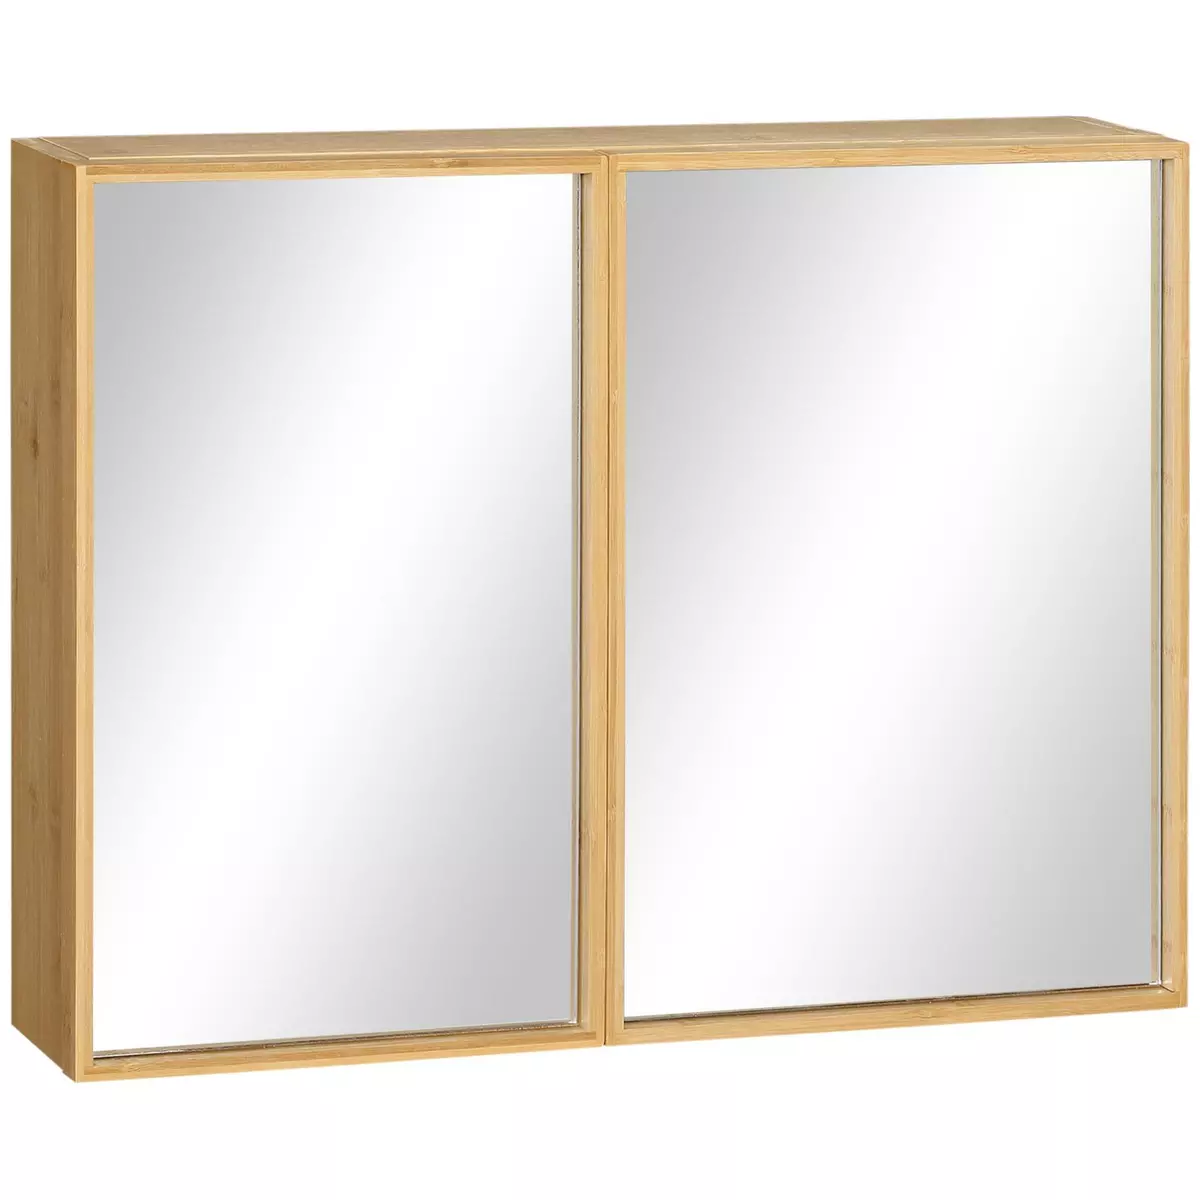 KLEANKIN Miroir de salle de bain avec placard 2 portes - 2 étagères - bois de bambou verni